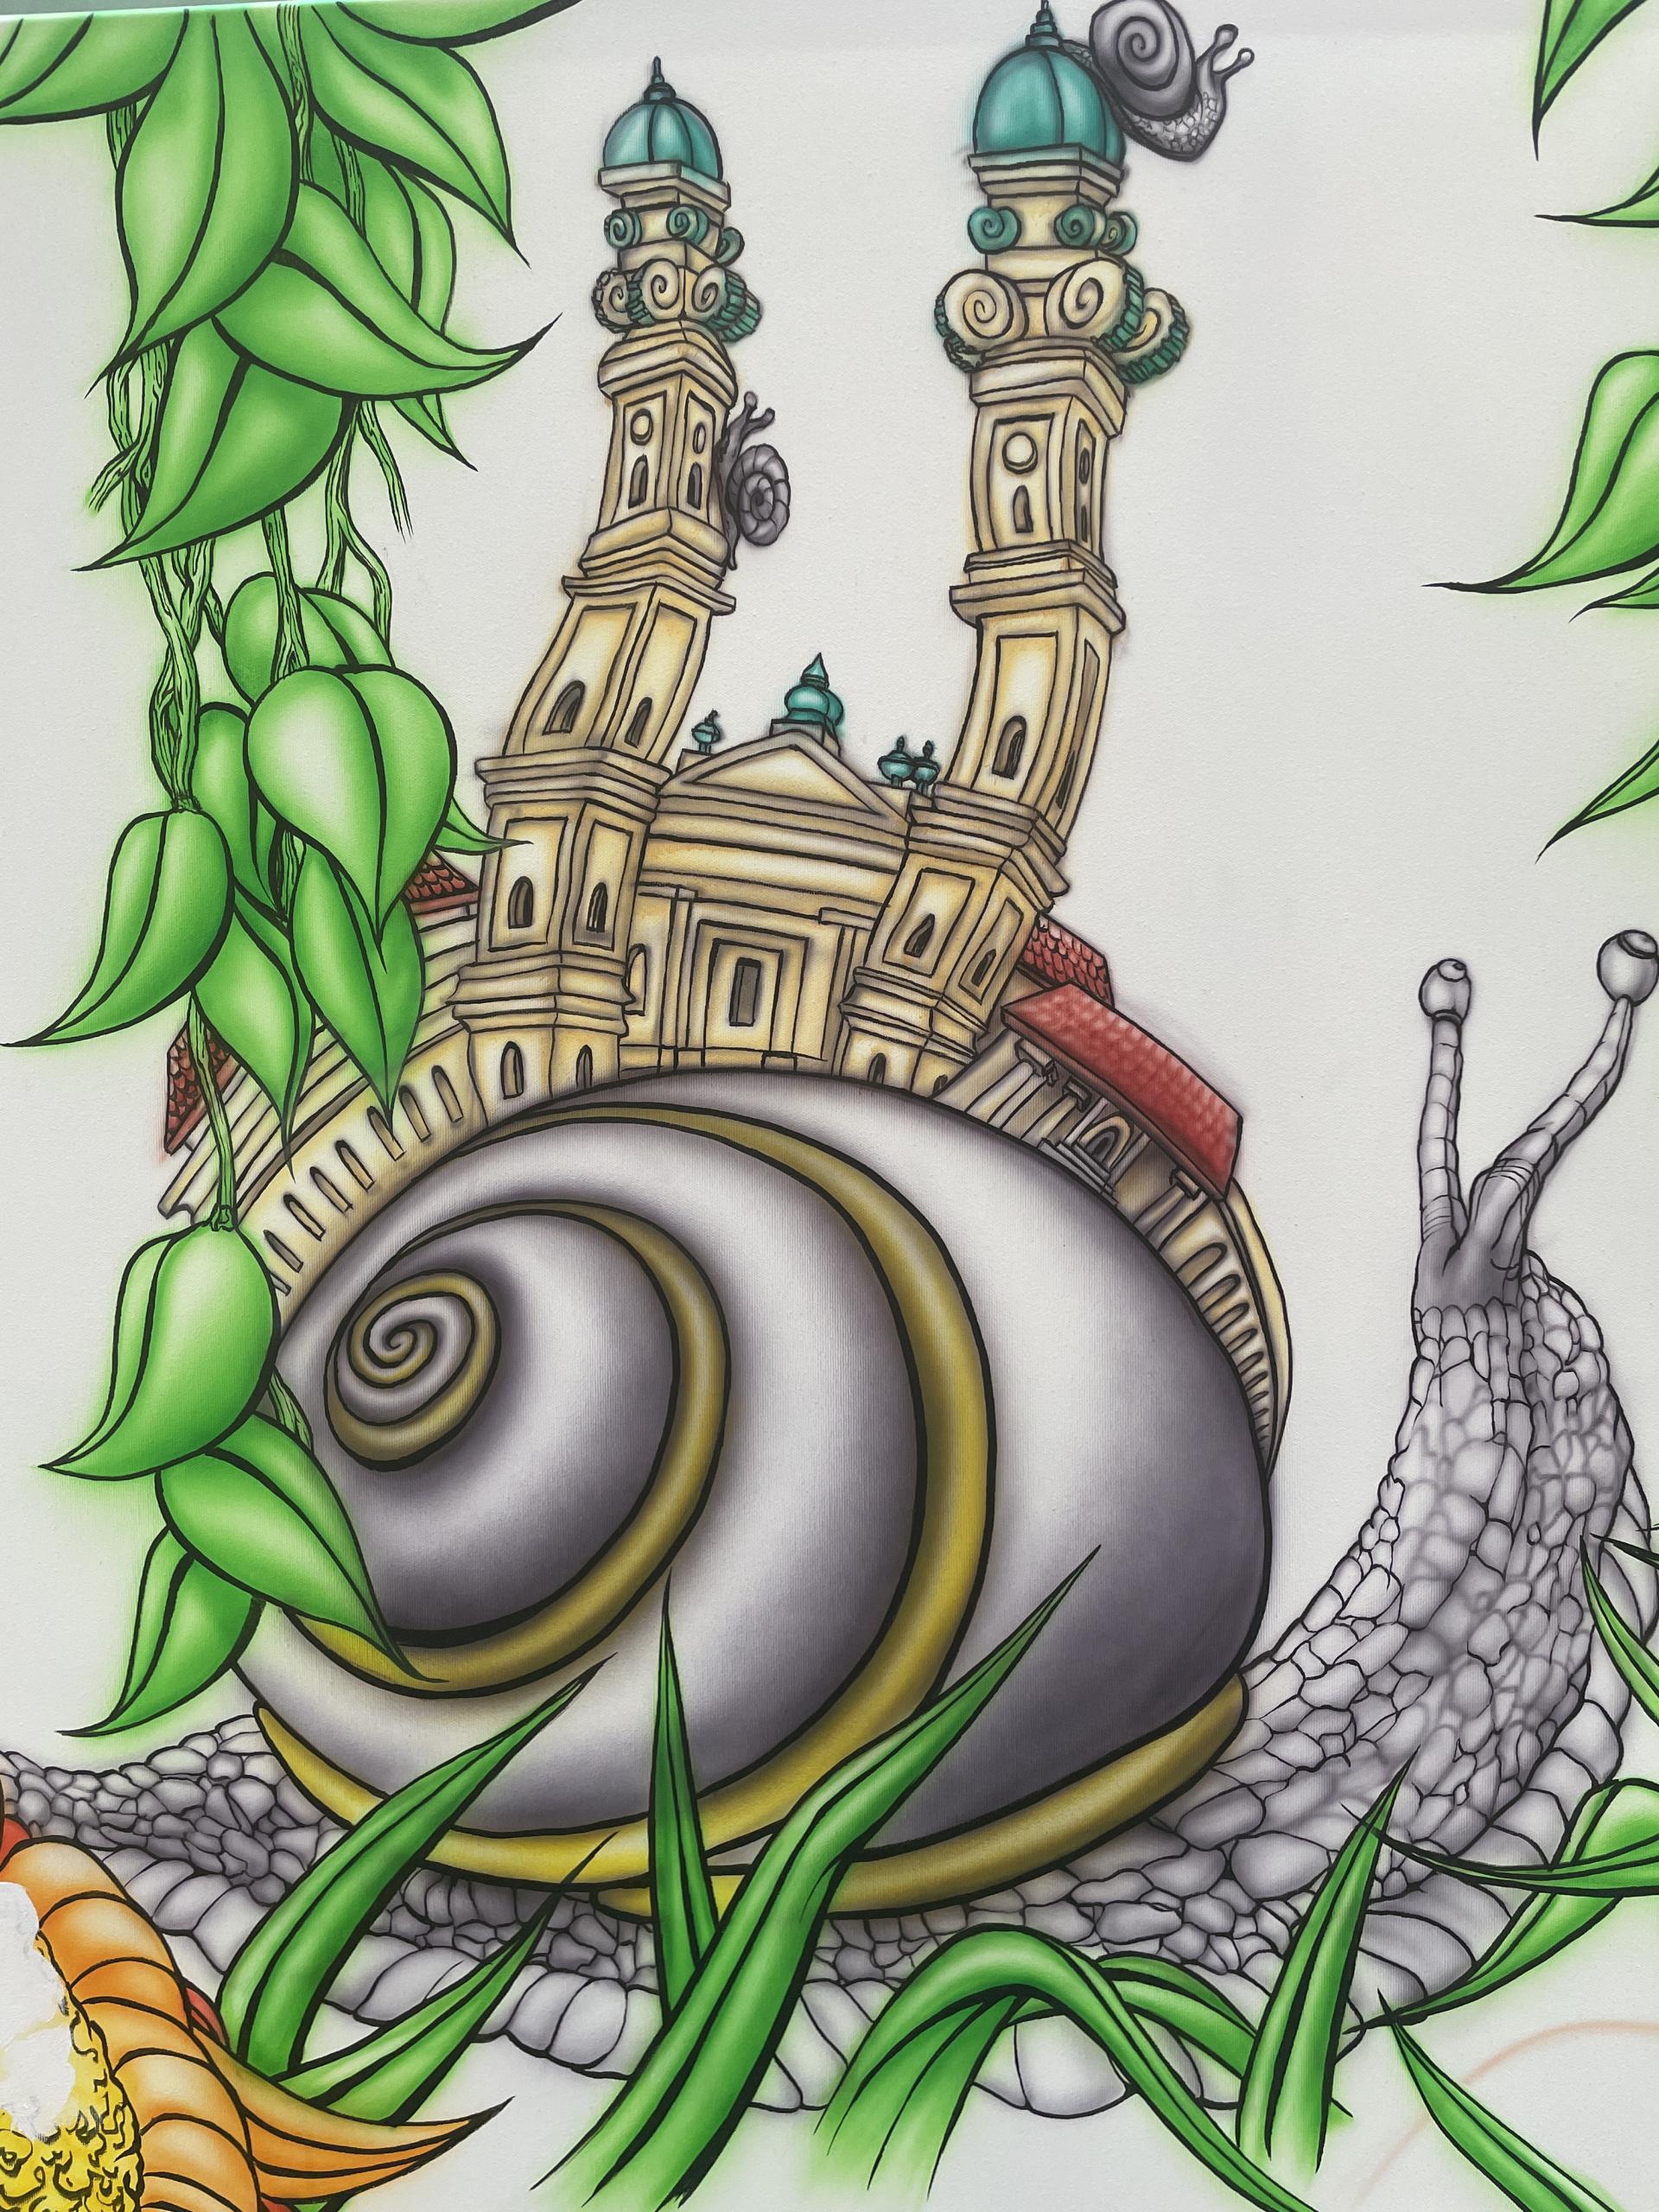 Das gemalte Bild einer Schnecke, umrankt mit grünen Pflanzen. Auf ihrem Schneckenhaus wachsen die Türme der Münchner Theatinerkirche hervor.